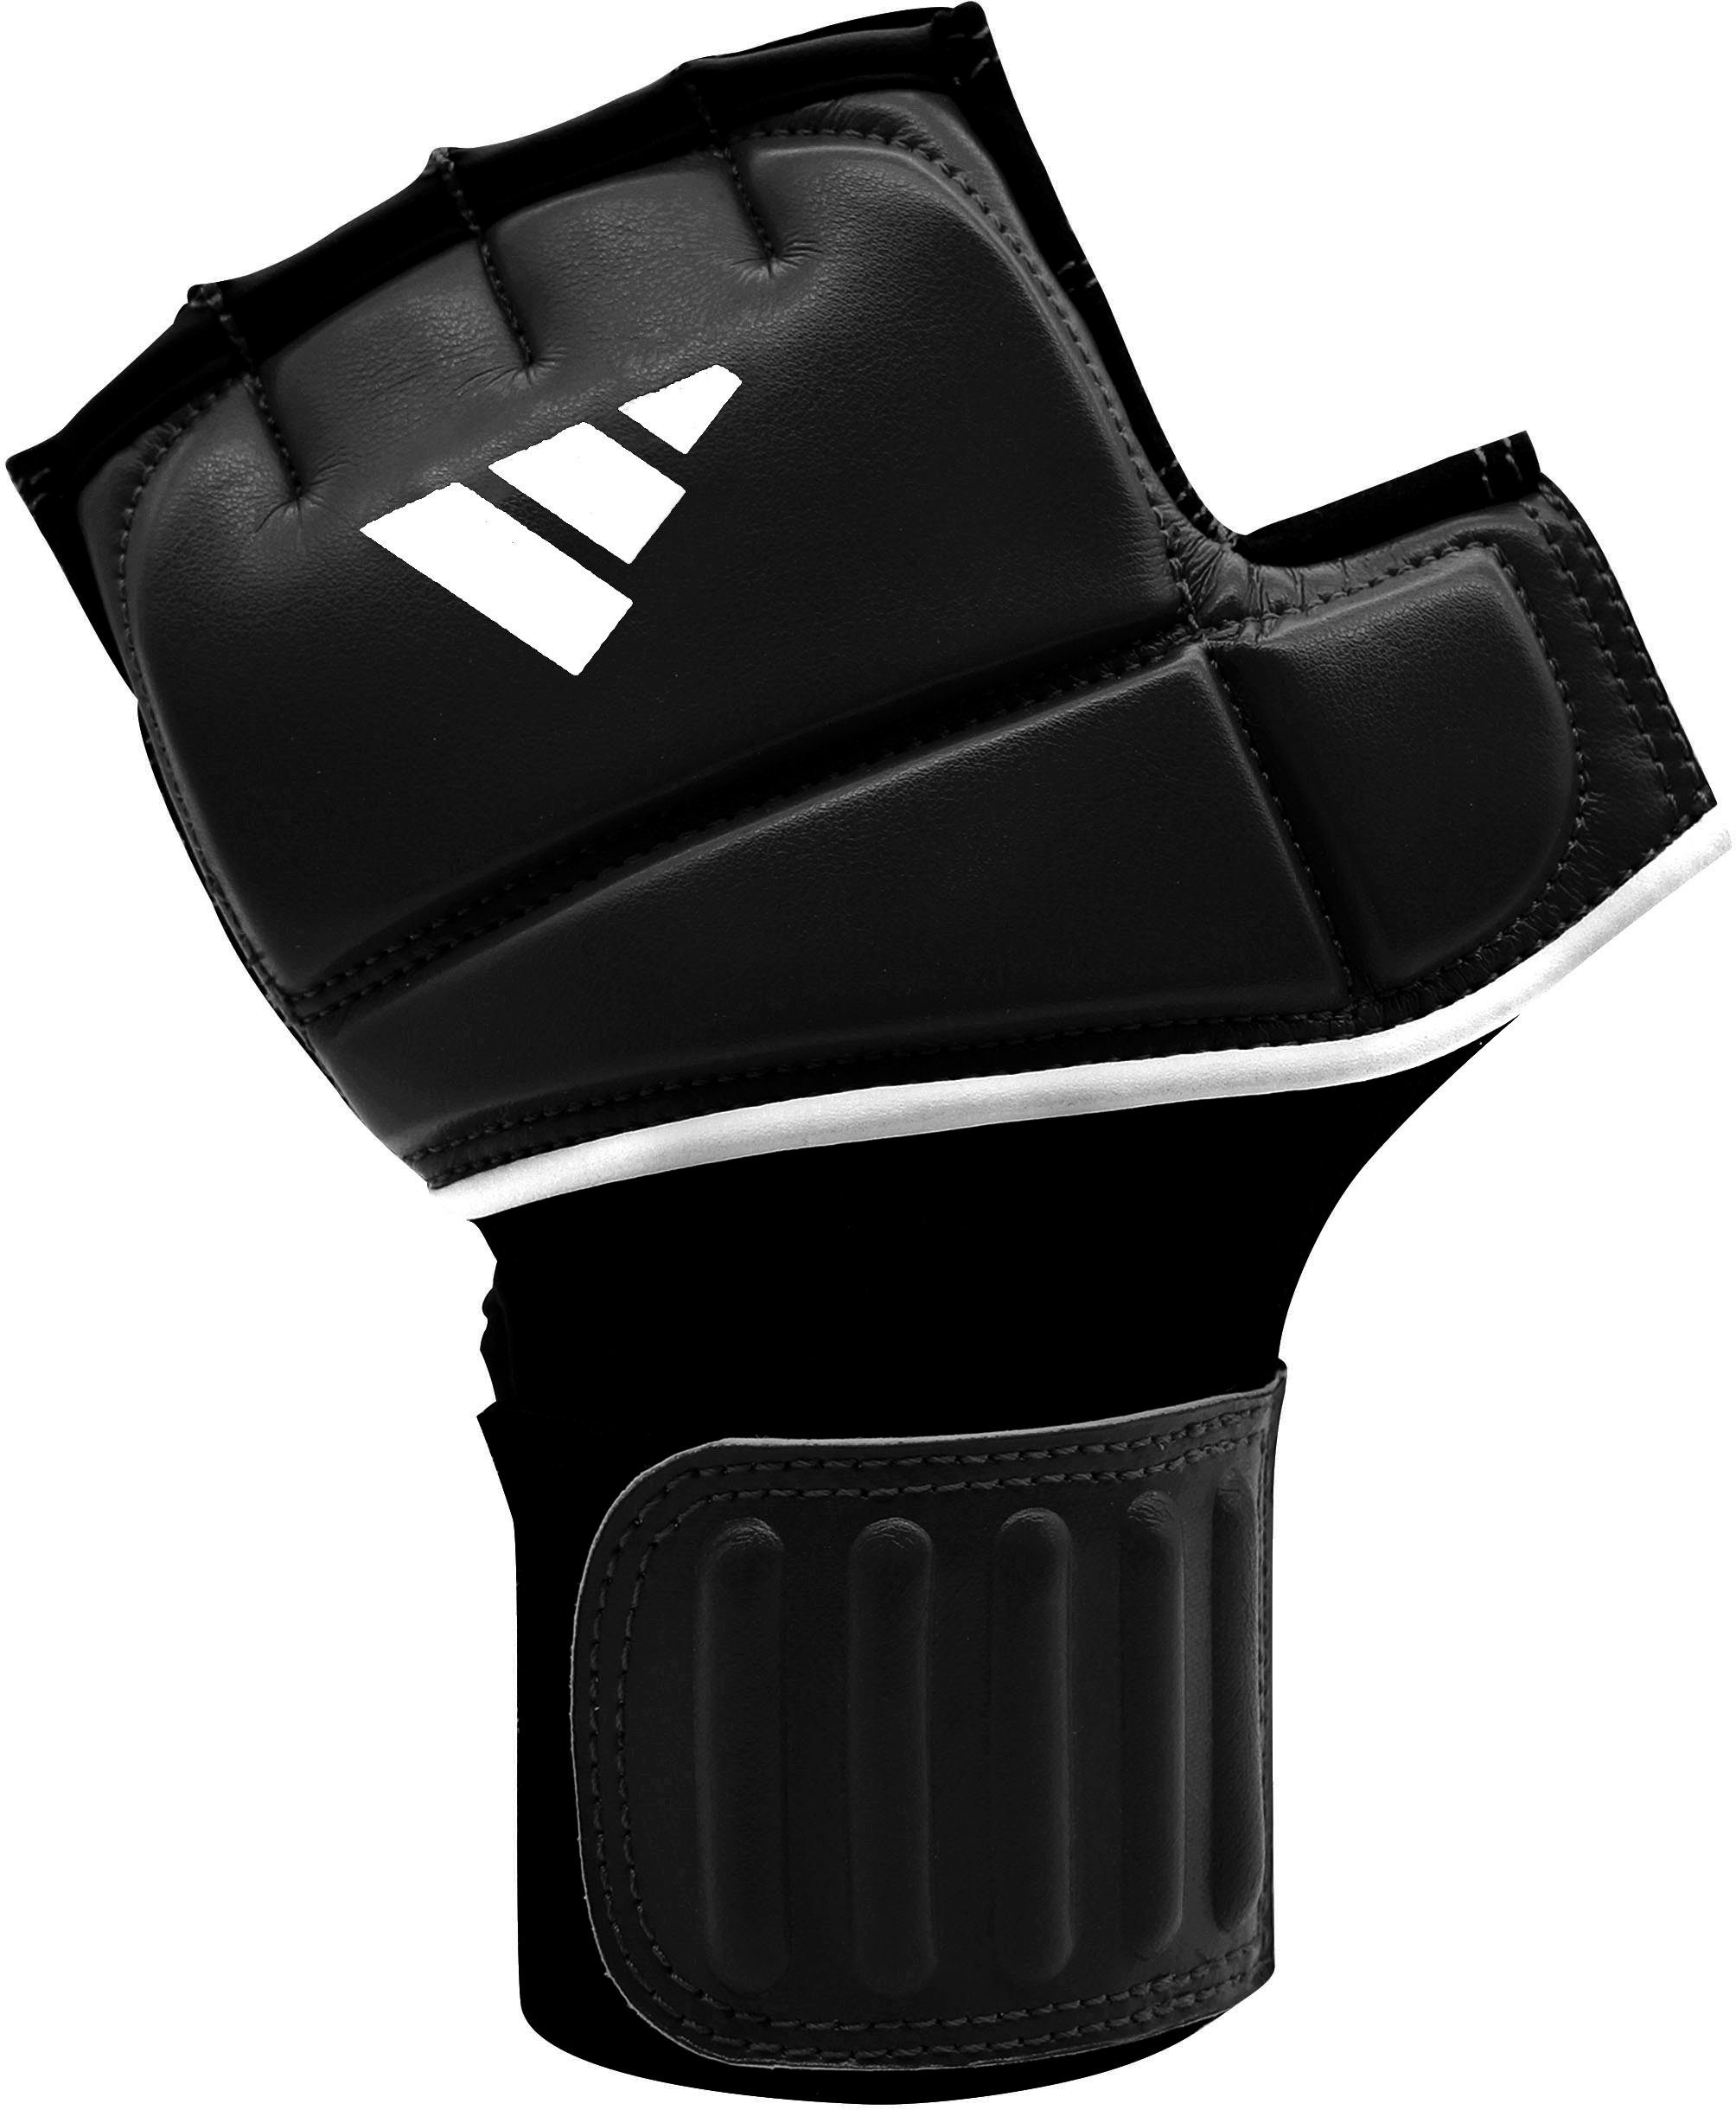 Performance Glove Gel Punch-Handschuhe Speed adidas